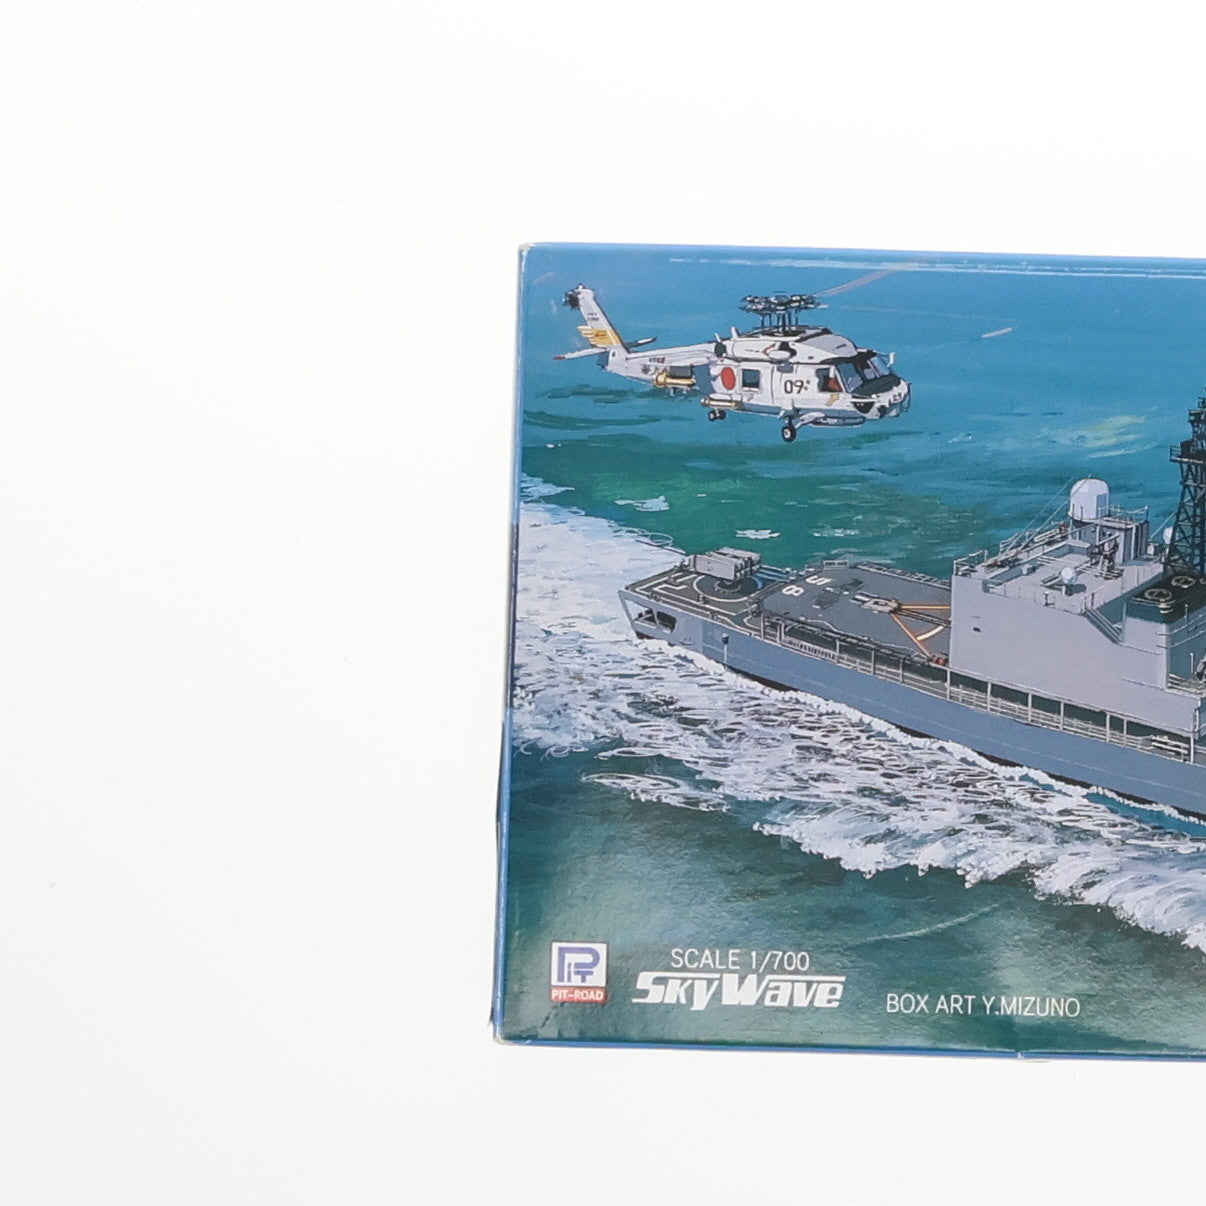 【中古即納】[PTM]スカイウェーブシリーズ 1/700 海上自衛隊護衛艦 DD-158 うみぎり プラモデル(J14) ピットロード(19991231)